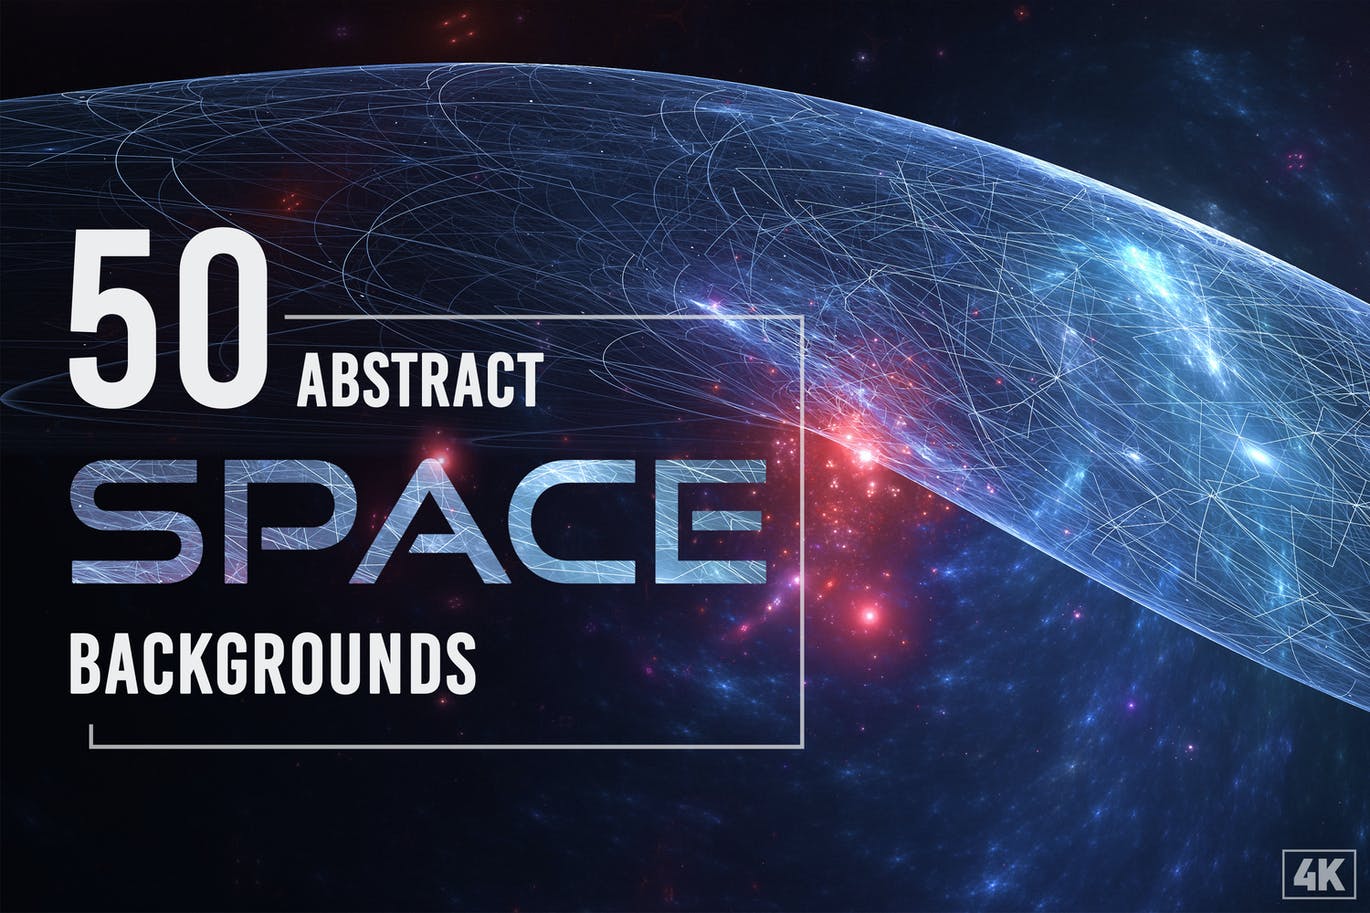 50个抽象银河空间背景素材v1 50 Abstract Space Backgrounds – Vol. 1 图片素材 第1张